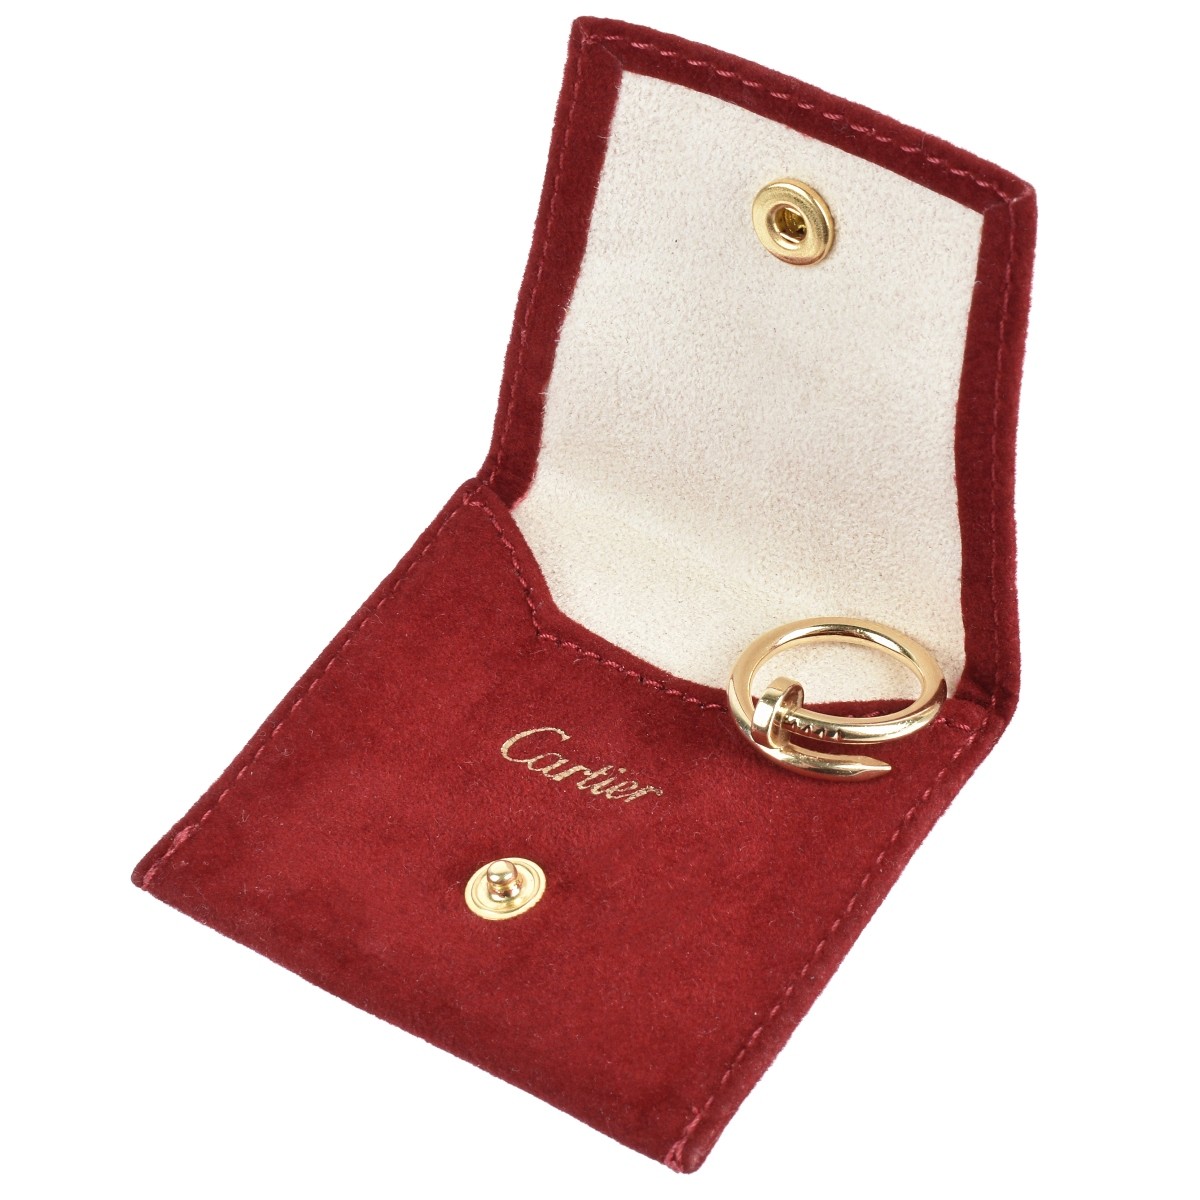 Cartier 18K Nail Ring